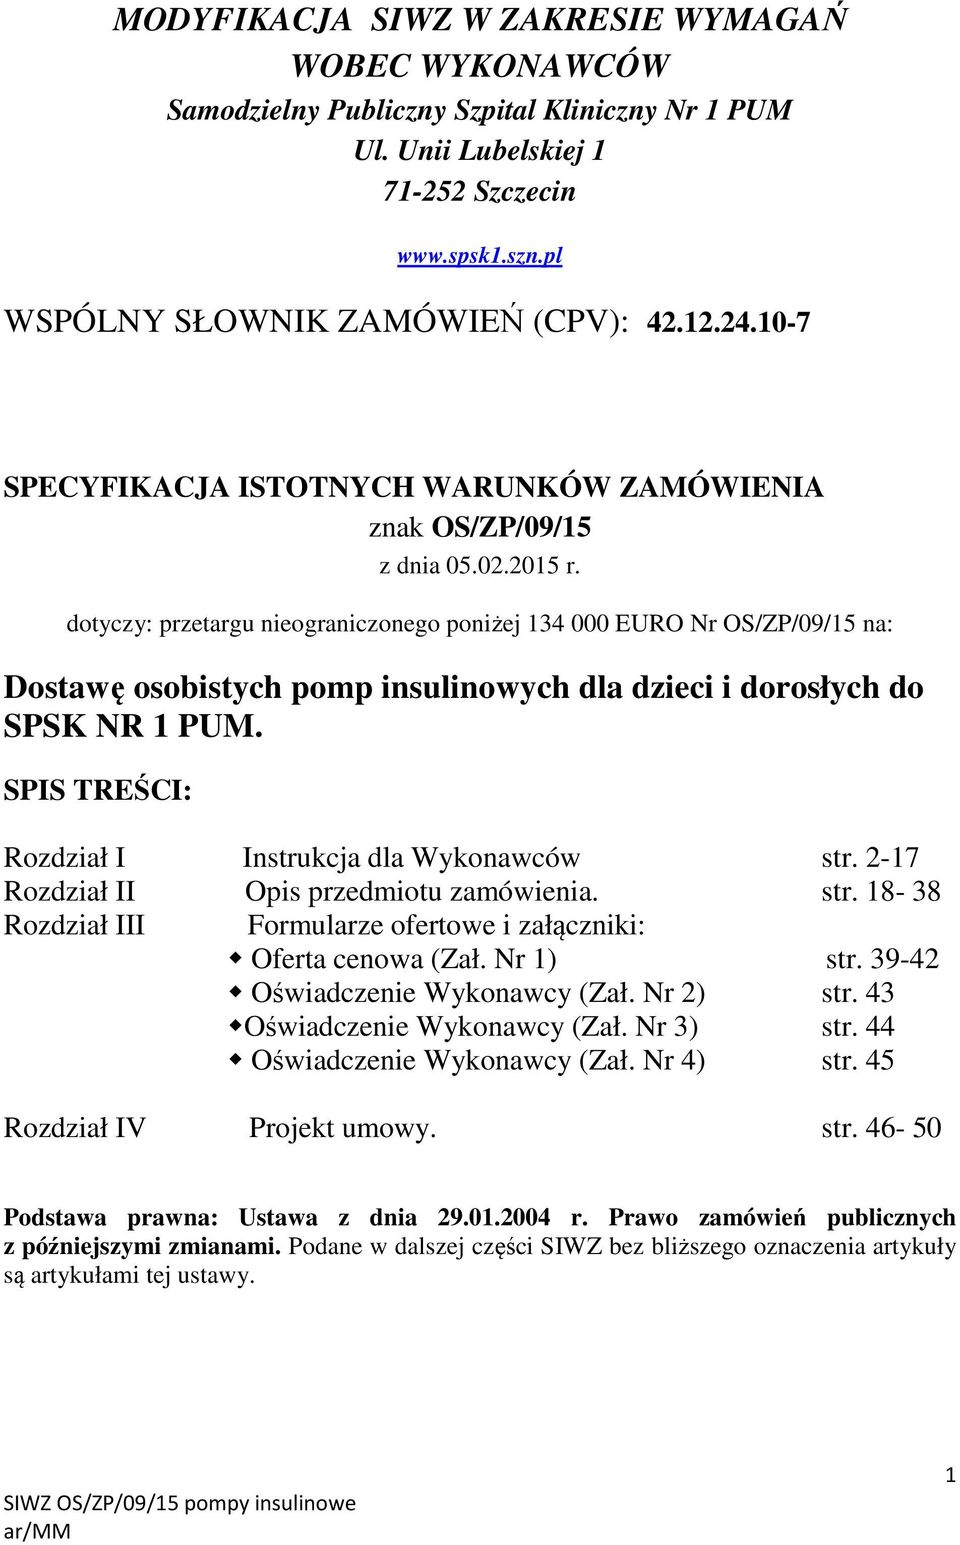 dotyczy: przetargu nieograniczonego poniżej 134 000 EURO Nr OS/ZP/09/15 na: Dostawę osobistych pomp insulinowych dla dzieci i dorosłych do SPSK NR 1 PUM.